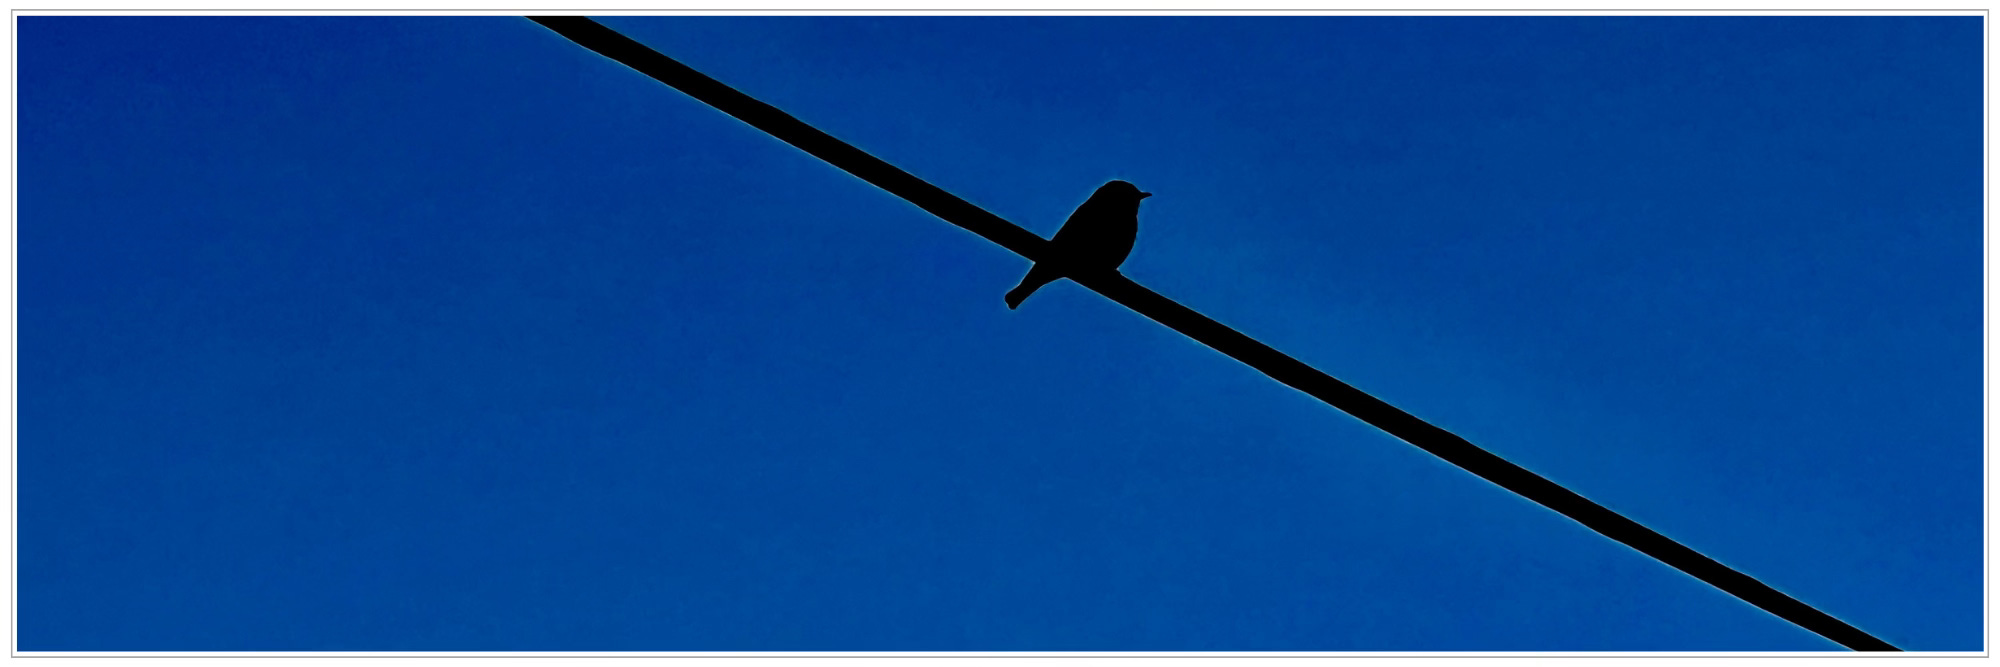 bird on wire, silhouette